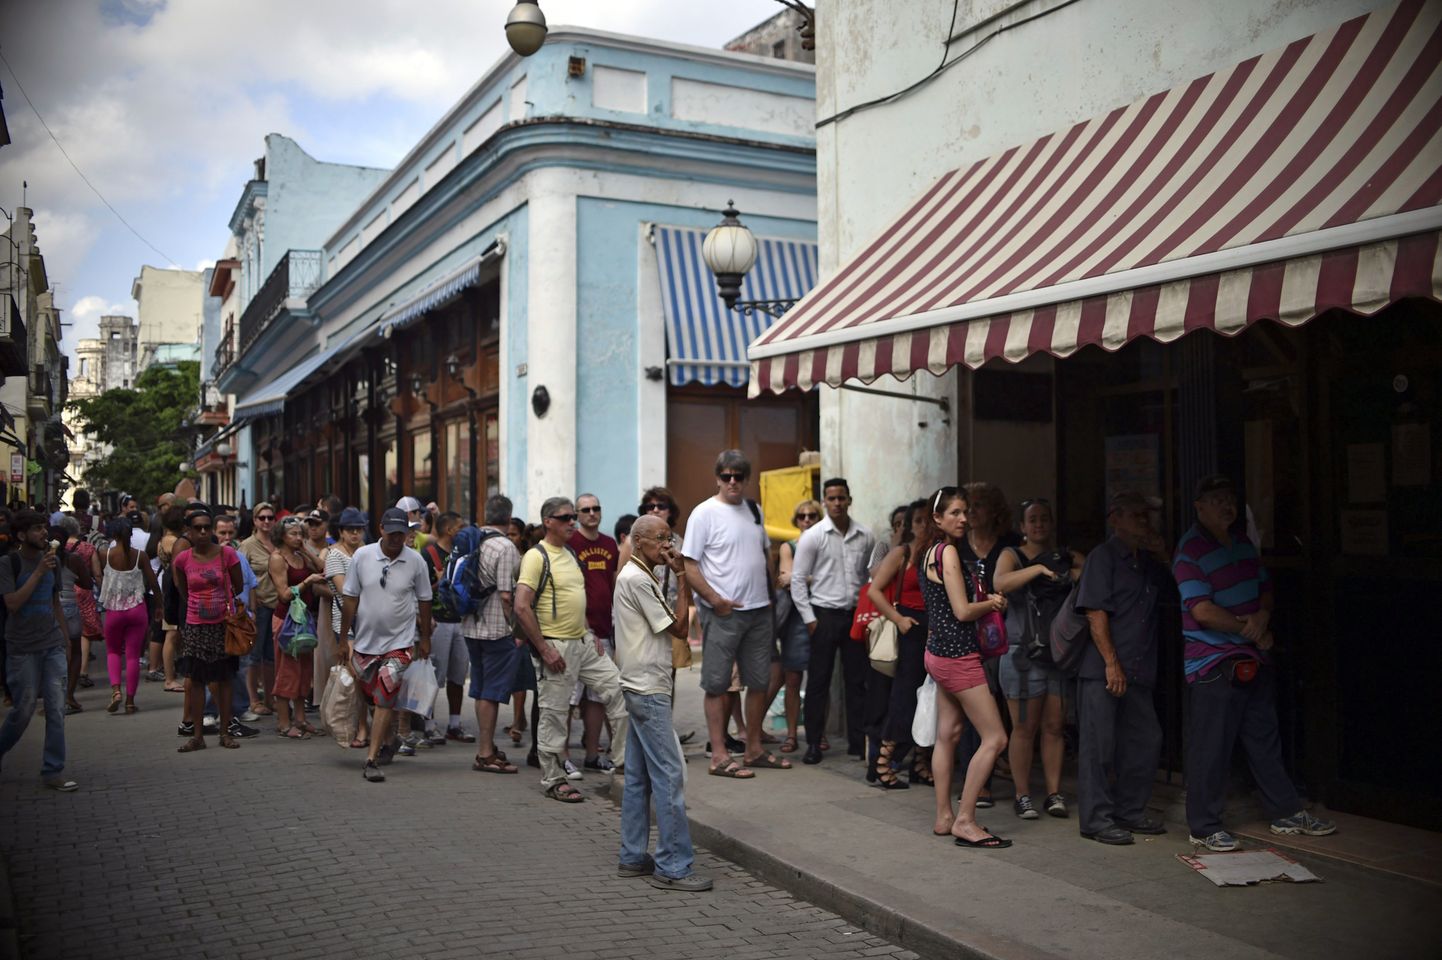 Turstid ja kuubalased ootavad pikas järjekorras Havanna Western Unioni kontori ukse taga, et reisitšekke rahaks vahetada.